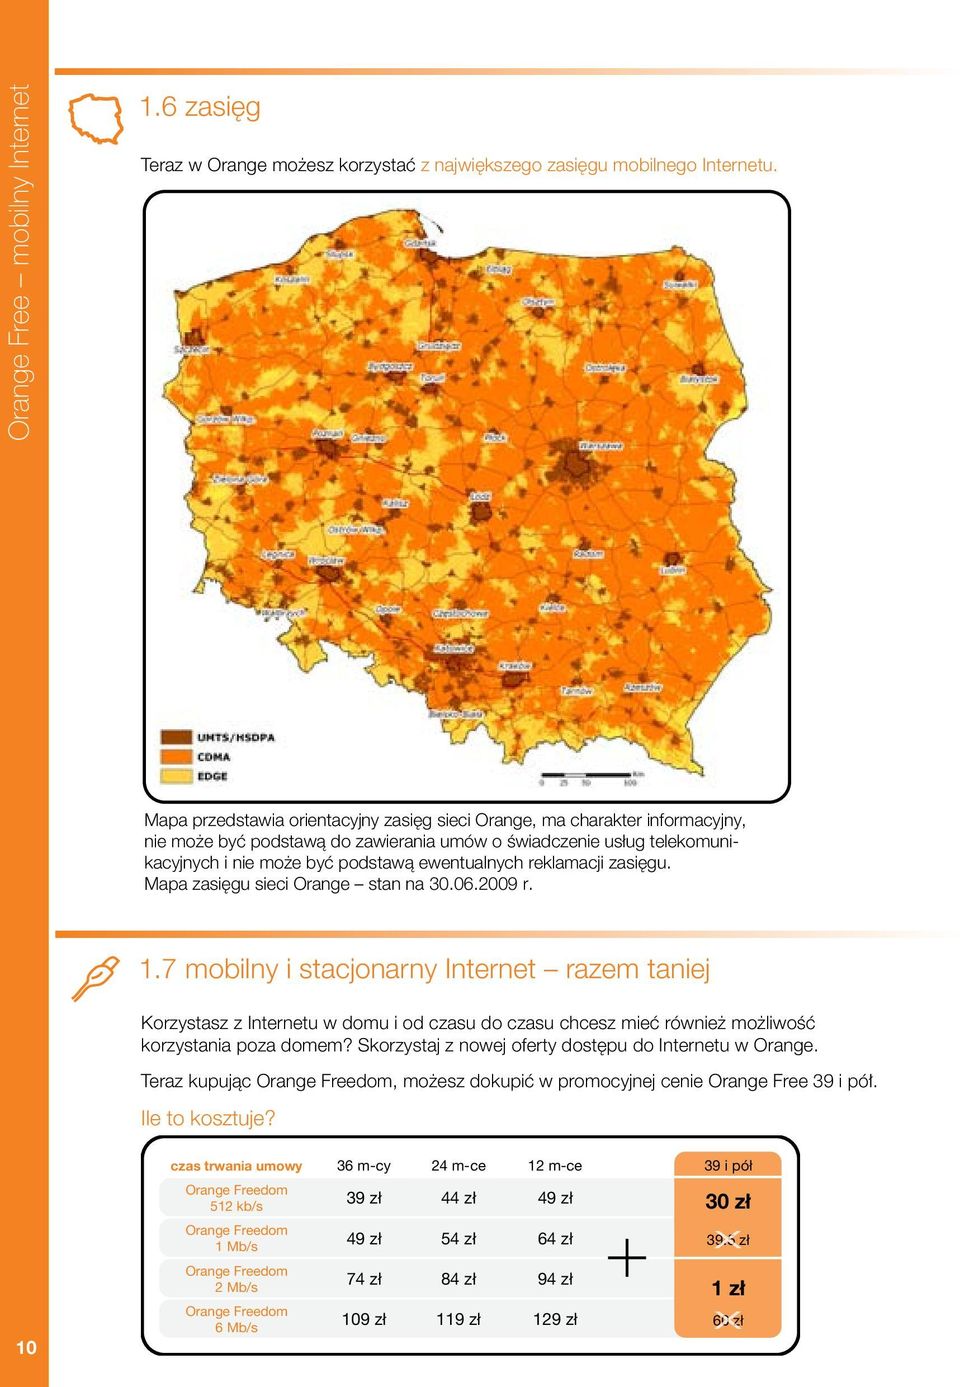 byç podstawà ewentualnych reklamacji zasi gu. Mapa zasi gu sieci Orange stan na 30.06.2009 r. 1.